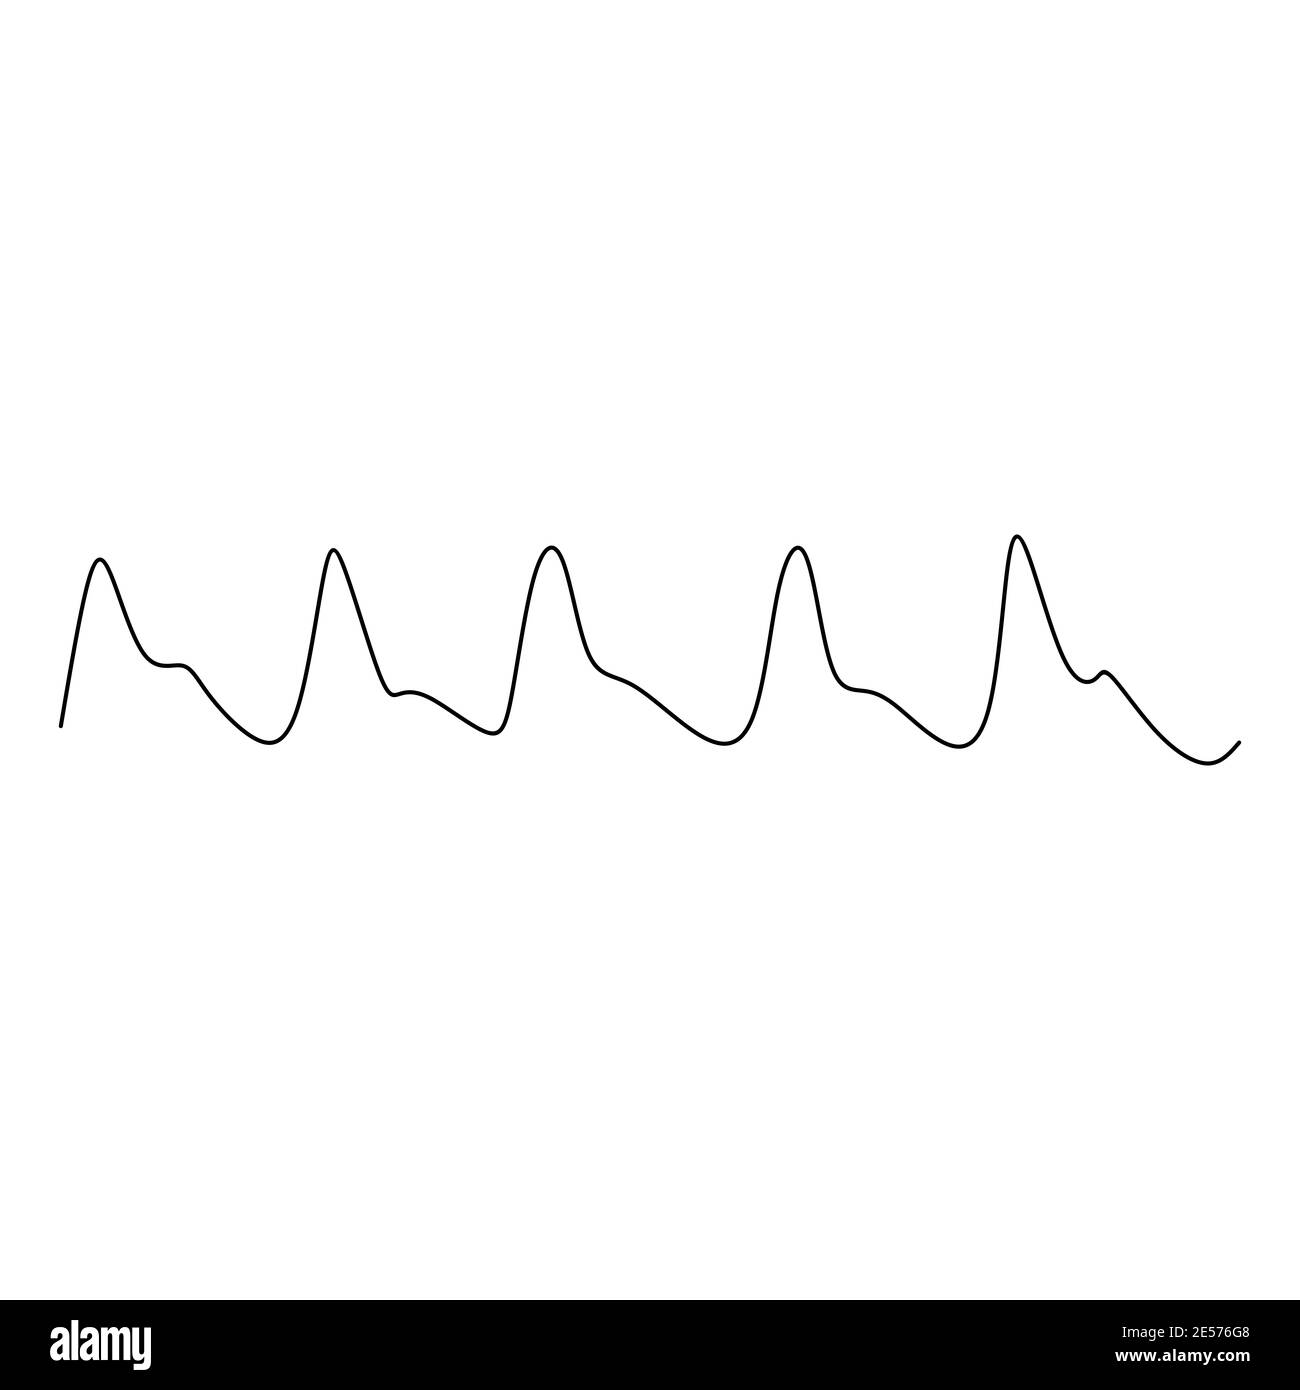 Modello vettoriale continuo di onde, linee. Motivo senza giunture disegnato a mano. Battito cardiaco, pattern cardiaco senza cuciture. Ottimo per tessuti, stampa, web, carta da parati Foto Stock